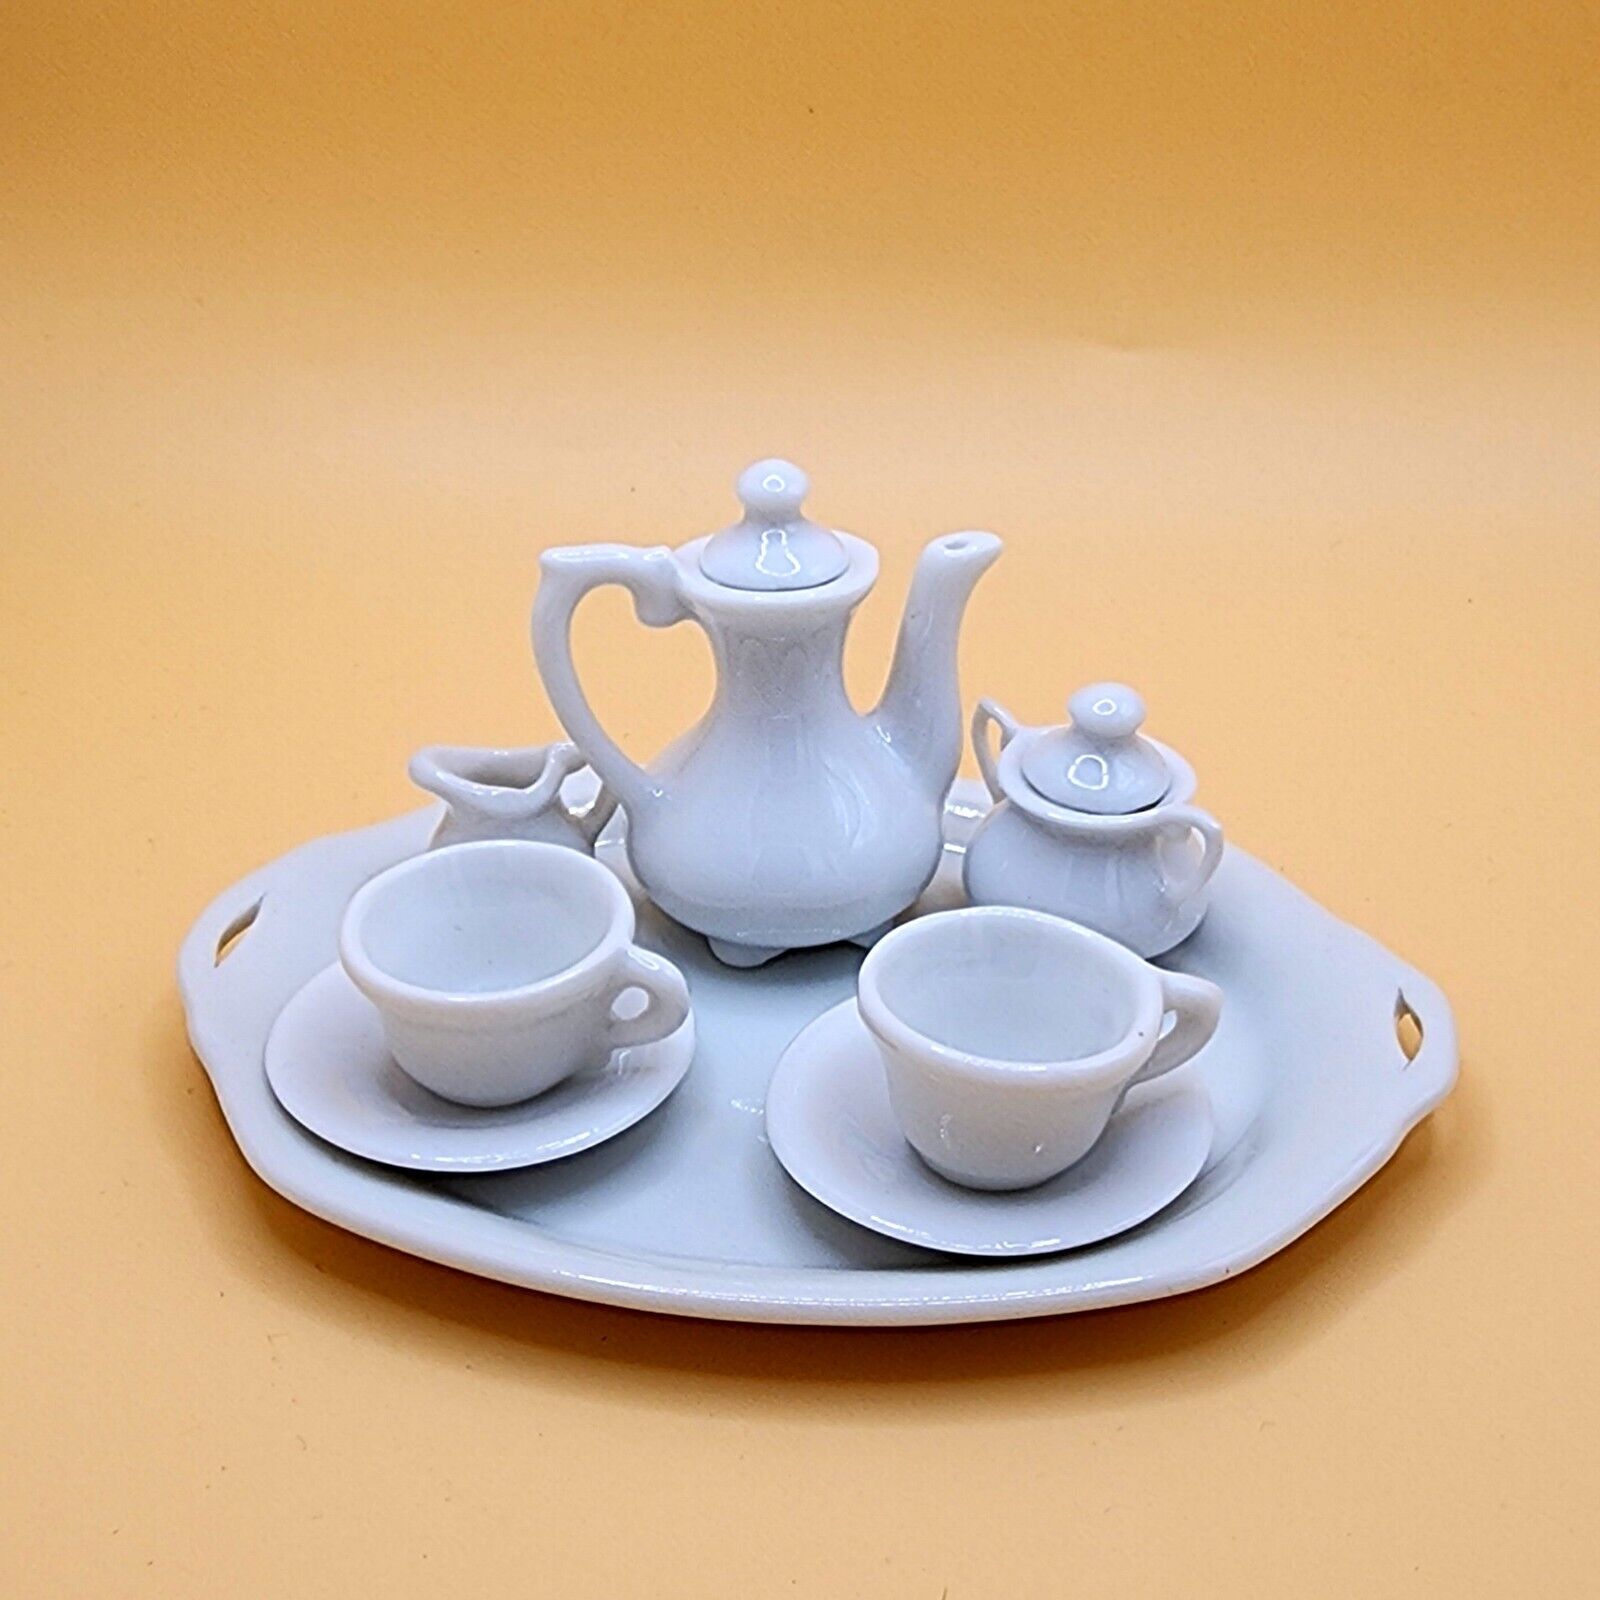 Vintage Dollhouse Miniature Porcelain Tea Set Made In Japan NIB Perfect Unused